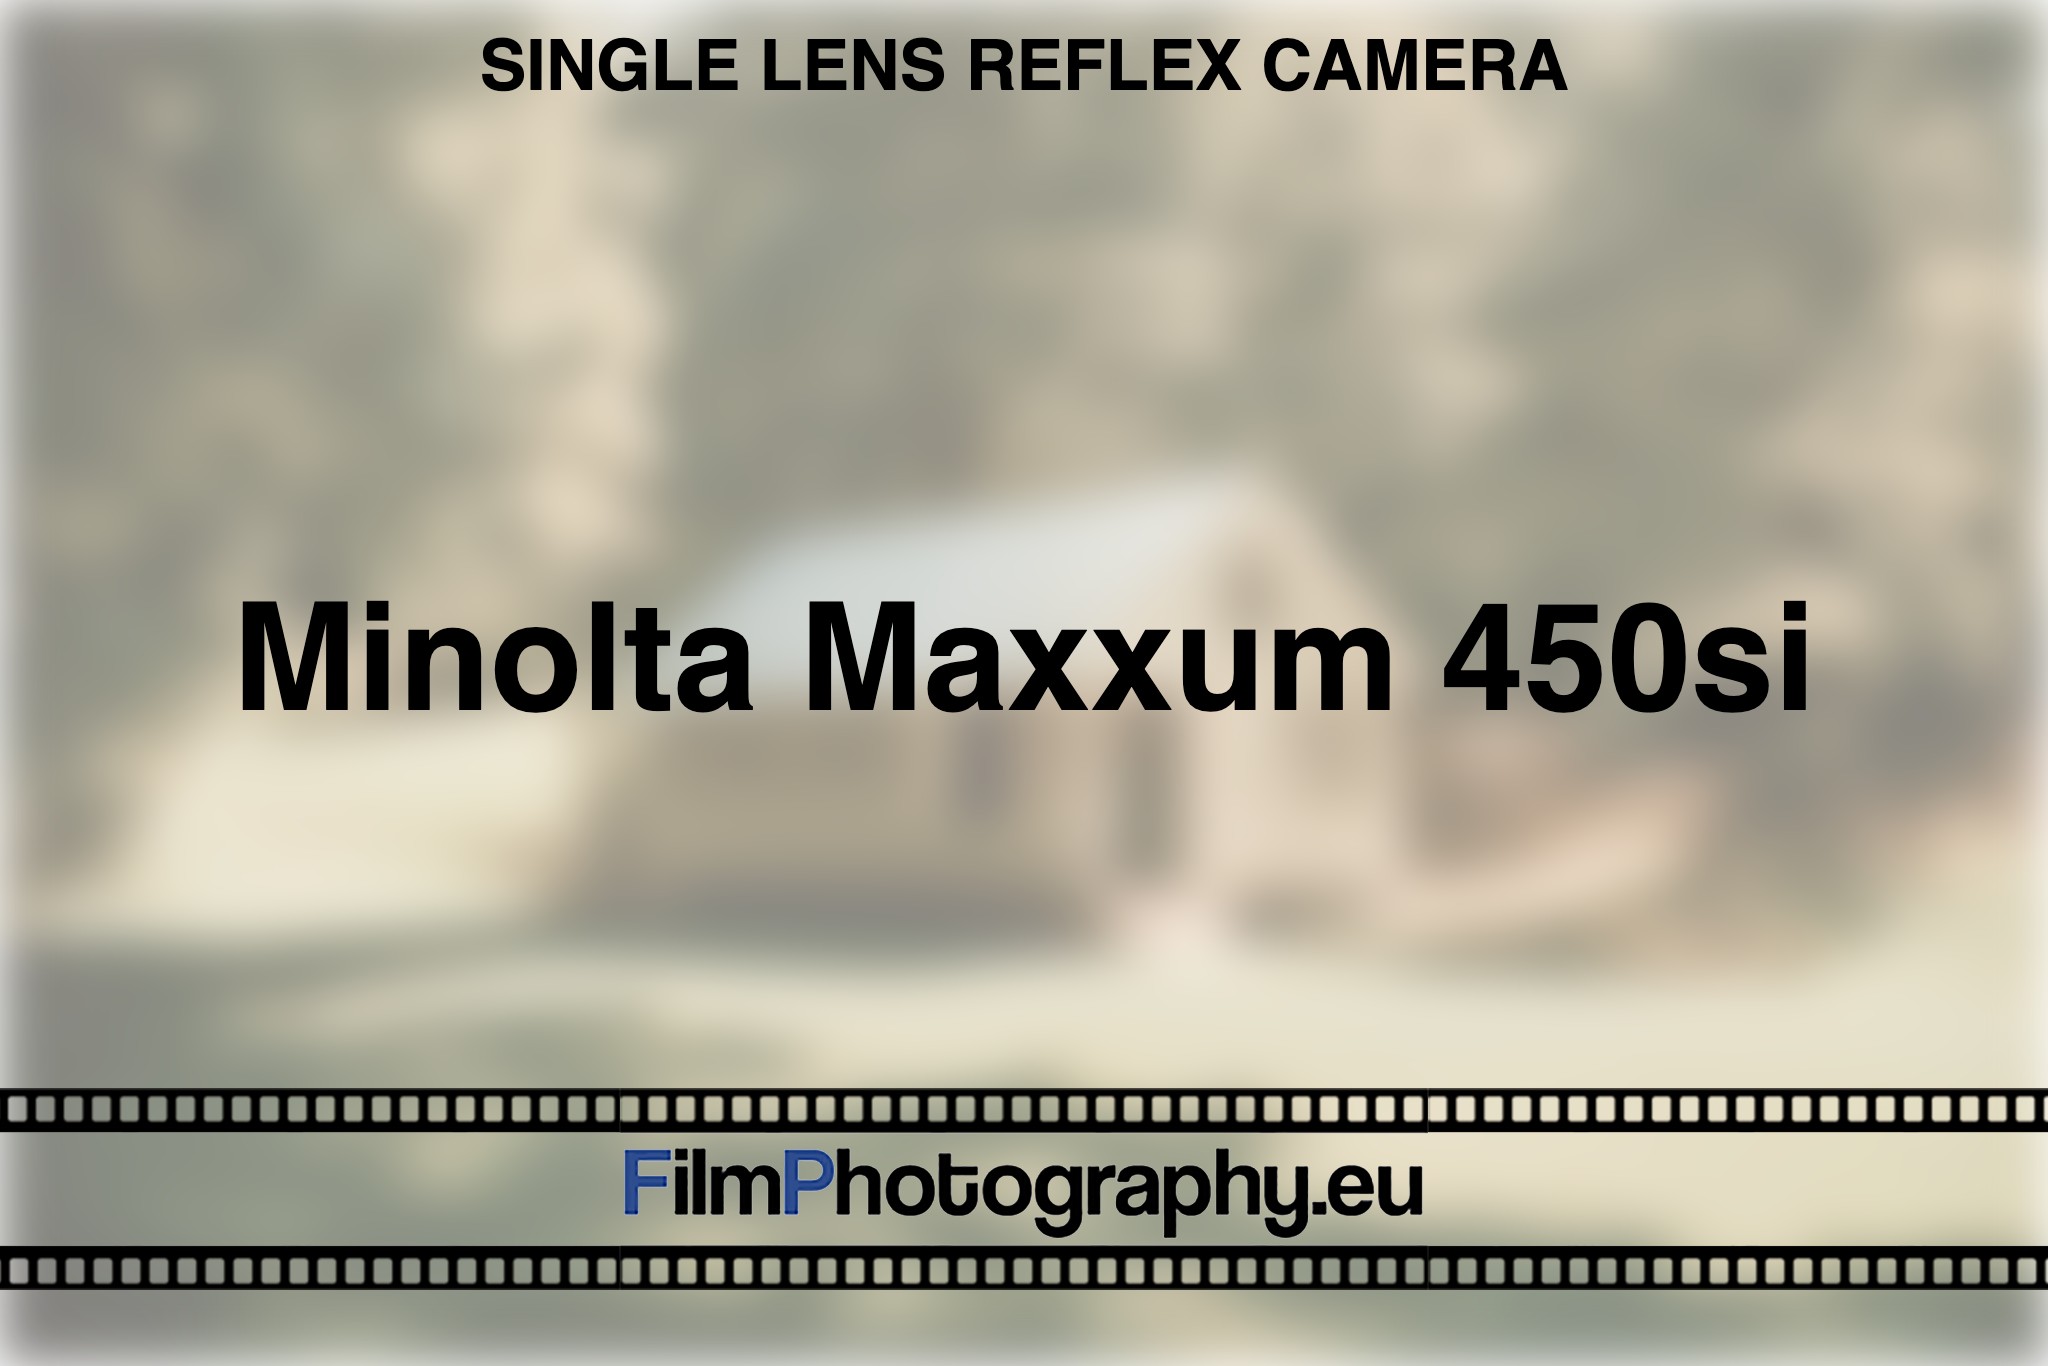 minolta-maxxum-450si-single-lens-reflex-camera-bnv